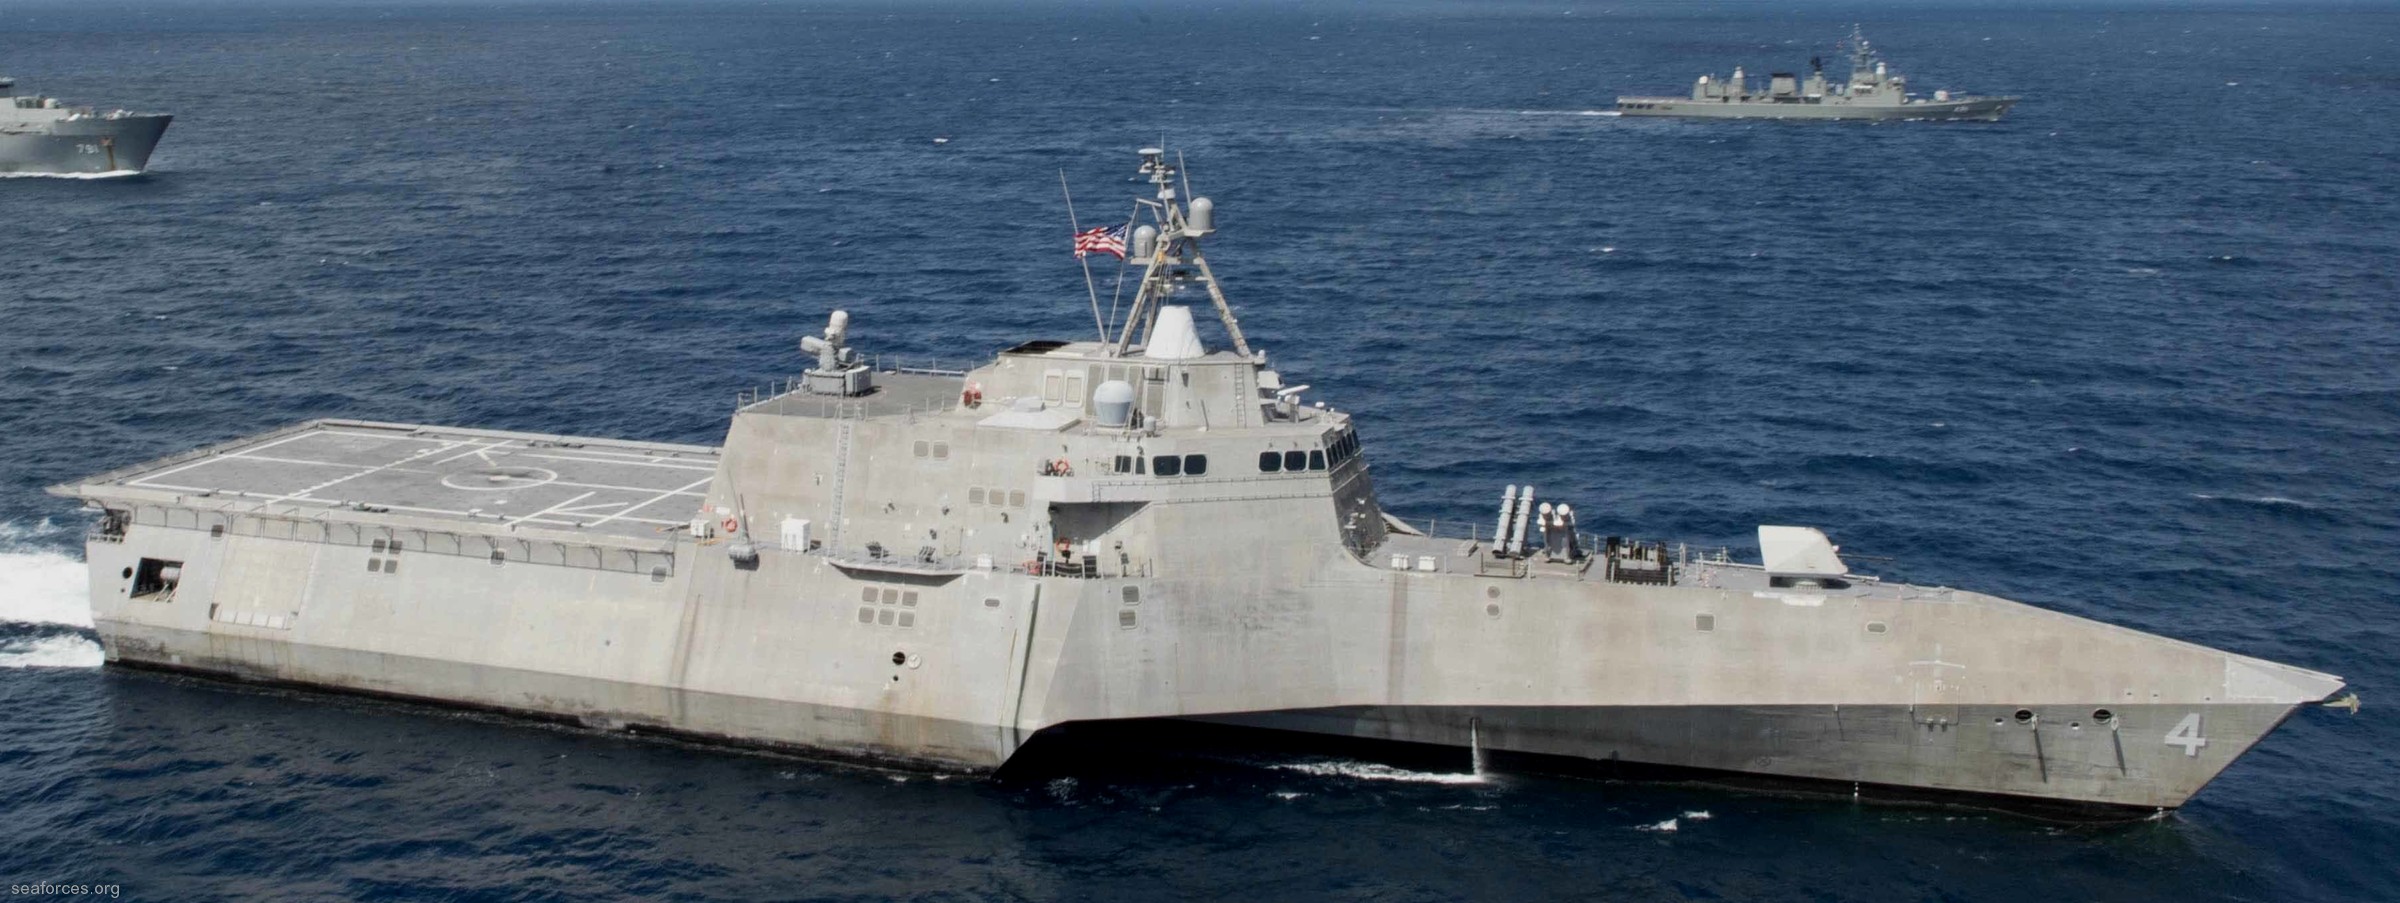 lcs-4 uss coronado independence class littoral combat ship us navy 15 carat thailand